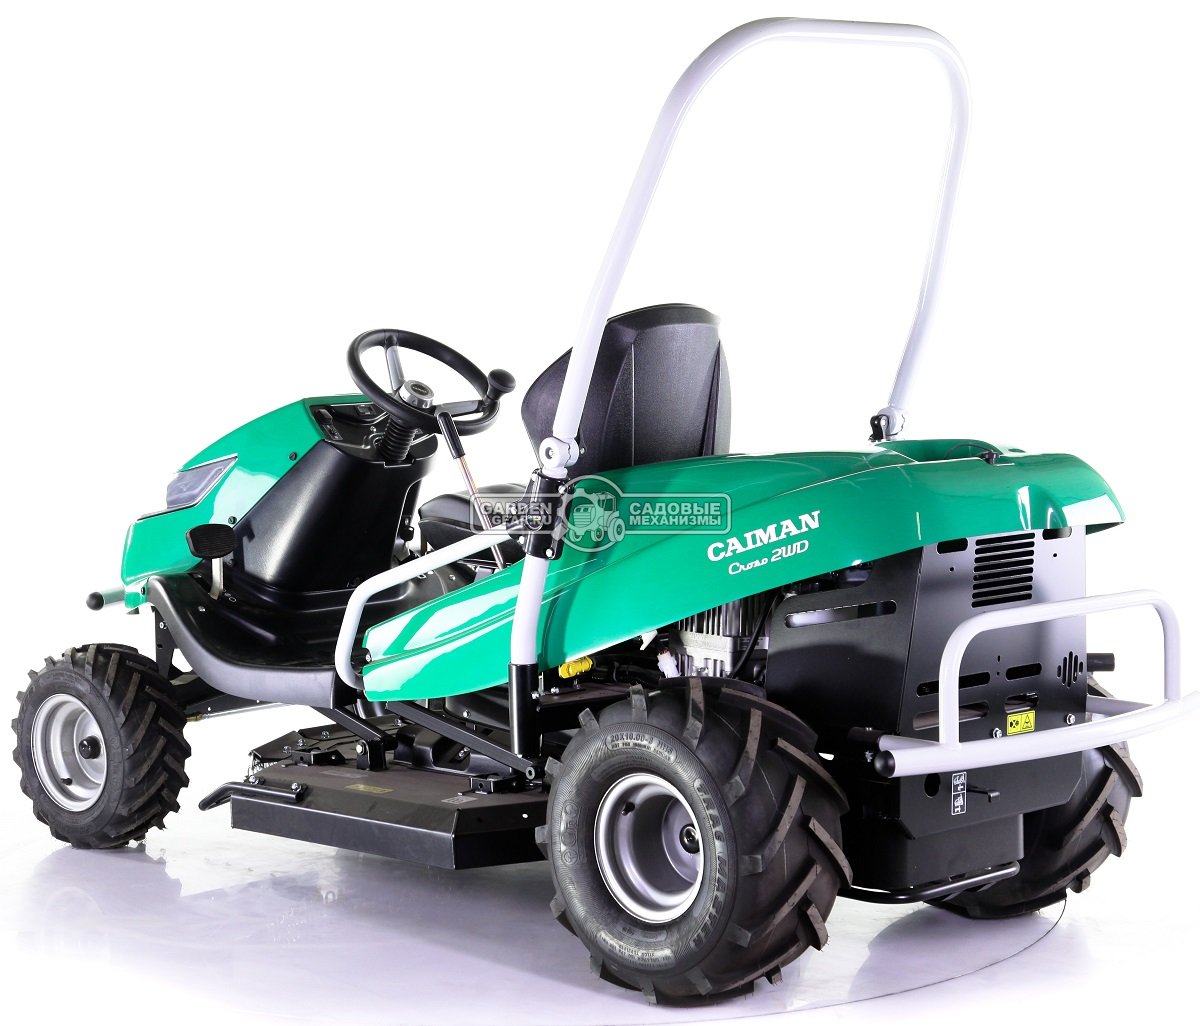 Садовый трактор для высокой травы и работы на склонах Caiman Croso 2WD (CZE, Caiman V-Twin, 708 куб.см., 92 см, дифференциал, 299 кг.)